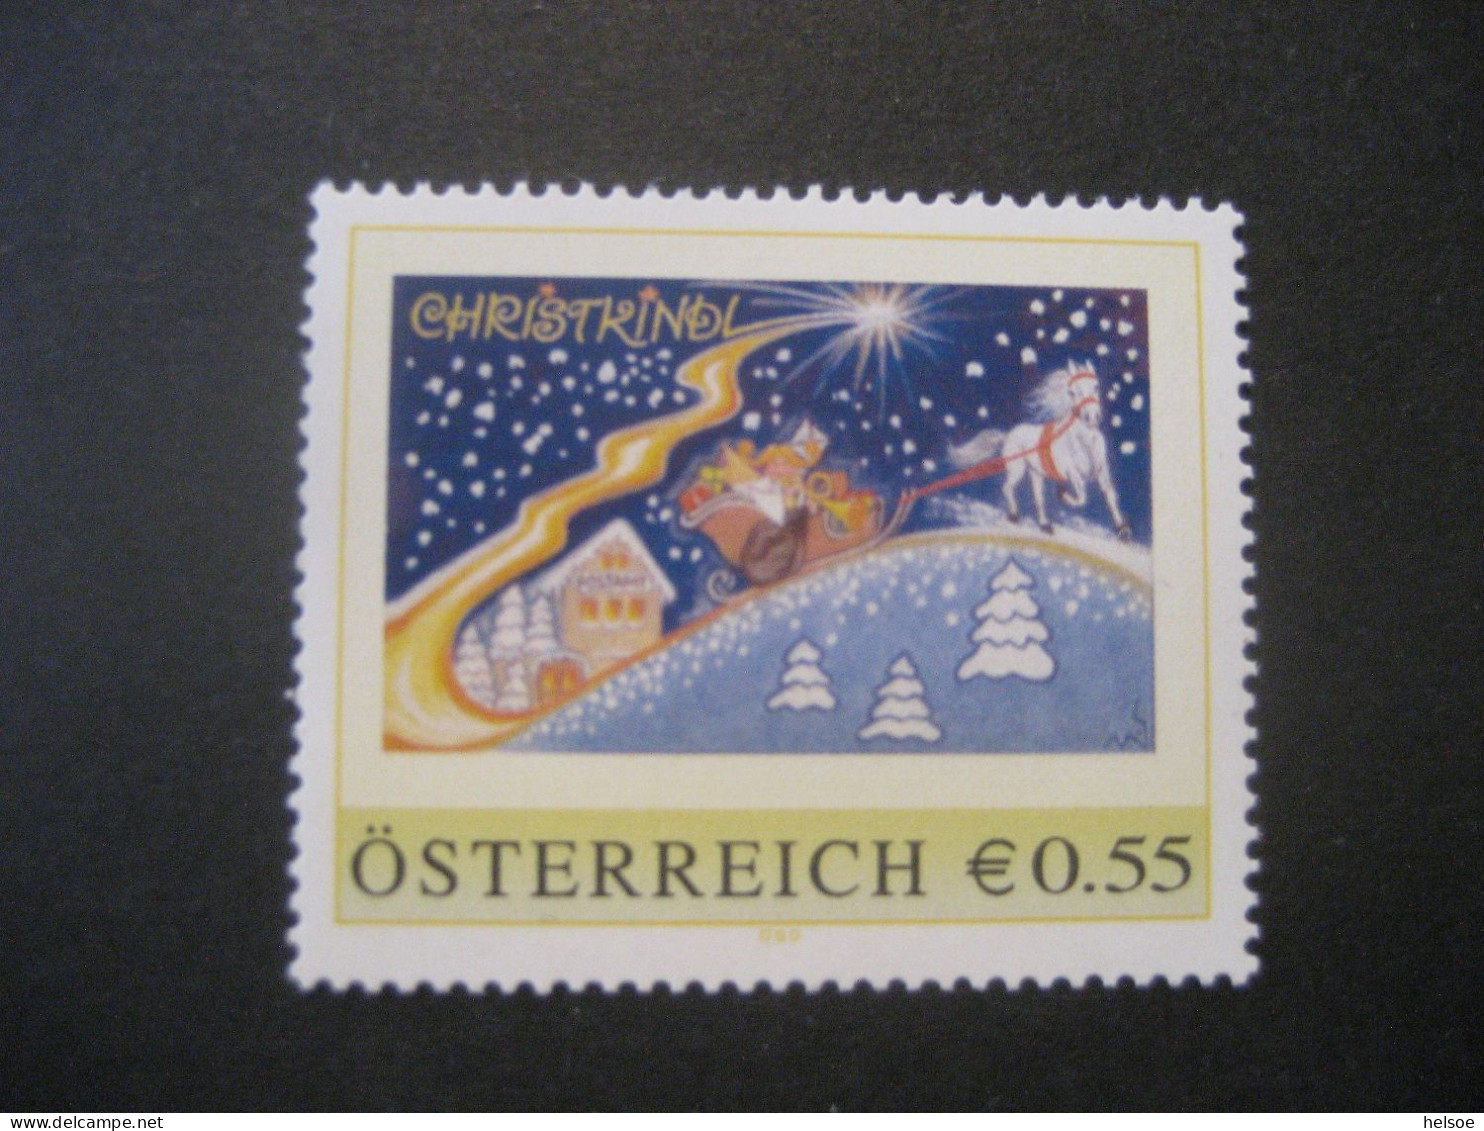 Österreich- PM ME-1.9 Postamt Christkindl Ungebraucht - Personalisierte Briefmarken